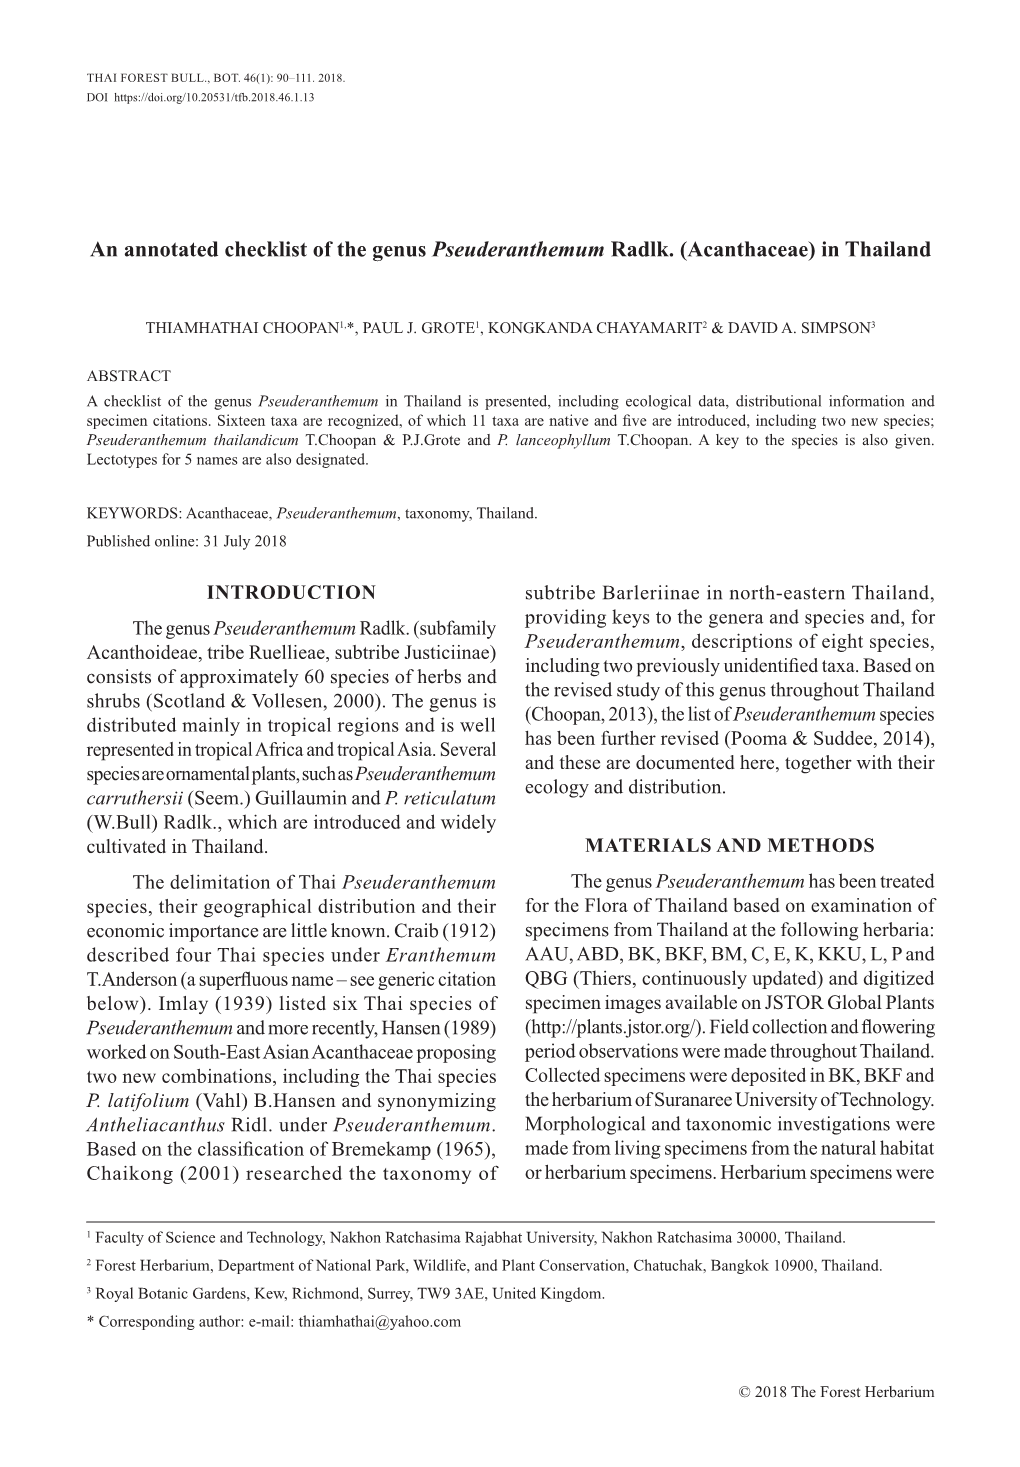 An Annotated Checklist of the Genus Pseuderanthemum Radlk. (Acanthaceae) in Thailand